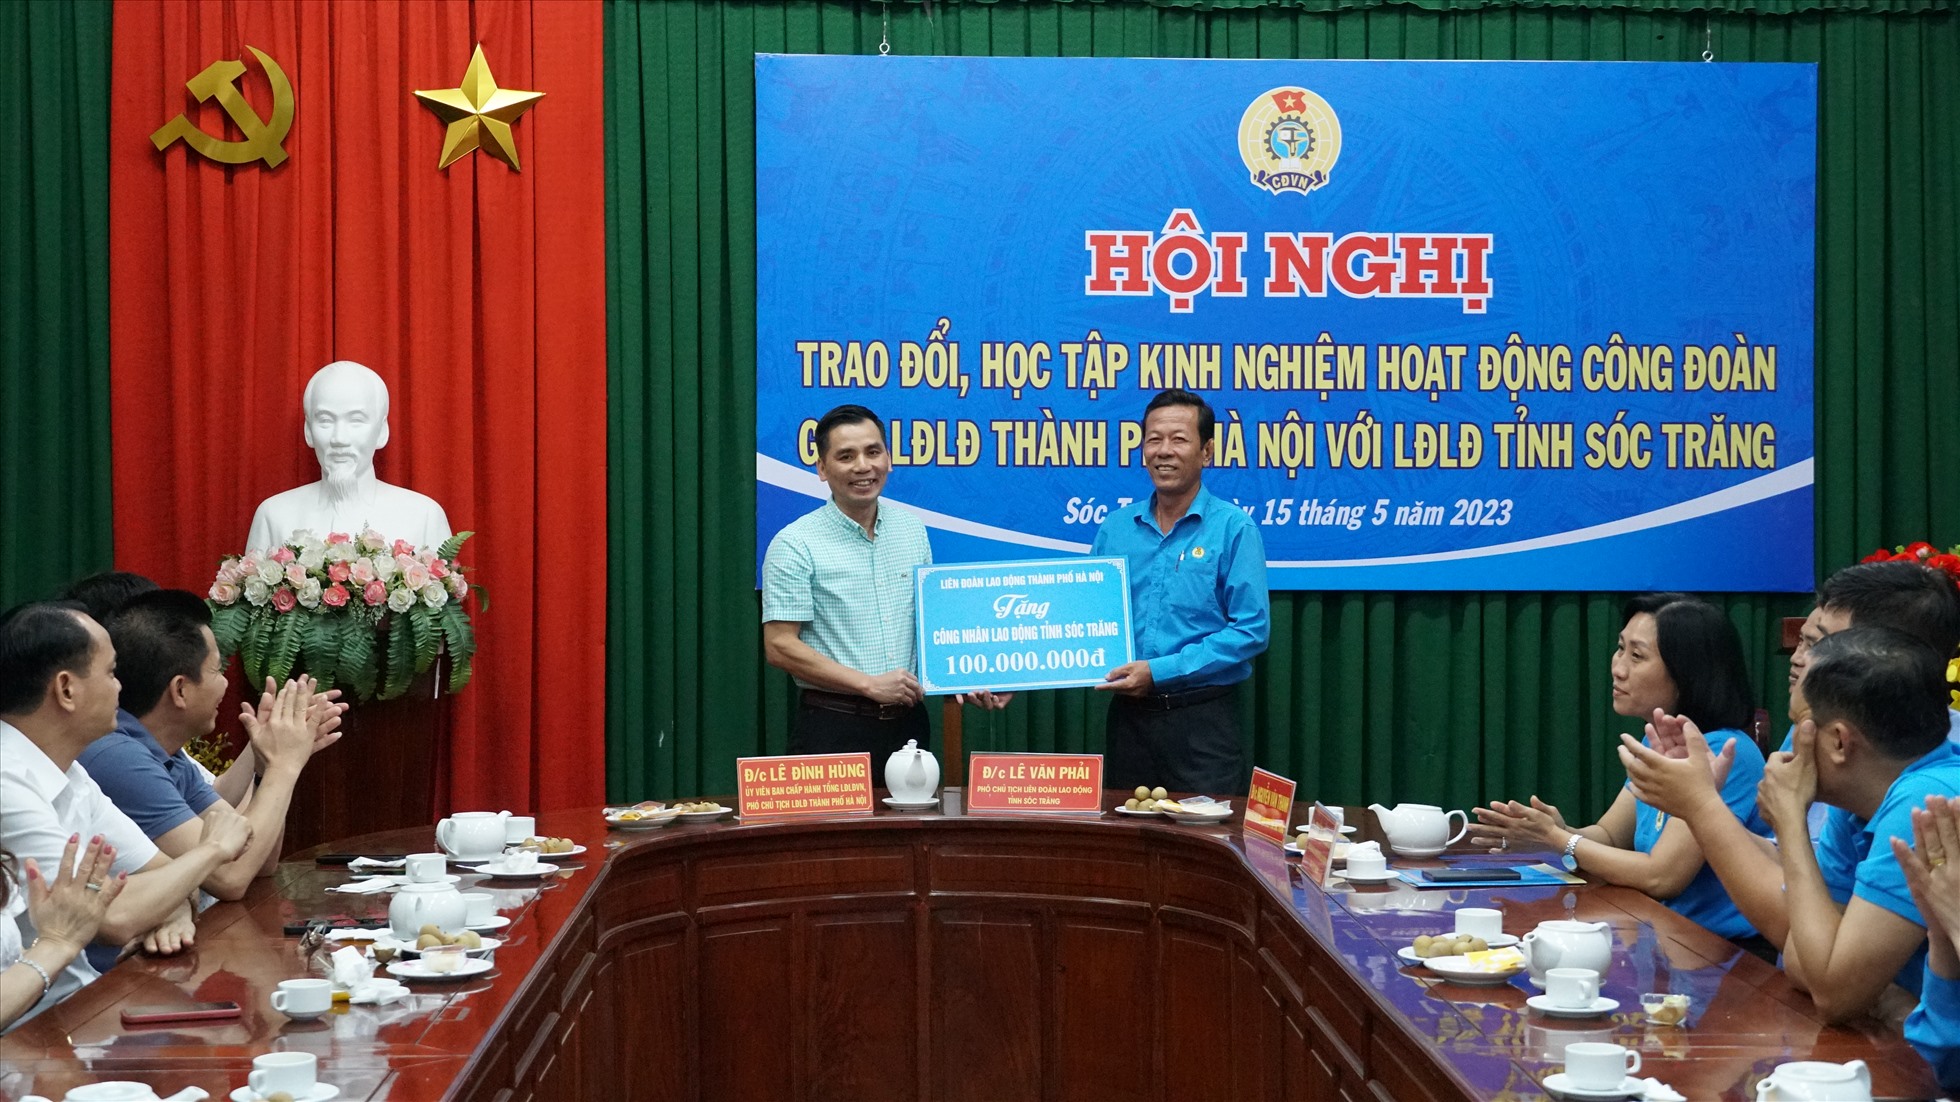 LĐLĐ TP Hà Nội trao tặng 100 triệu đồng cho công nhân, người lao động nghèo của LĐLĐ tỉnh Sóc Trăng. Ảnh: Anh Khoa